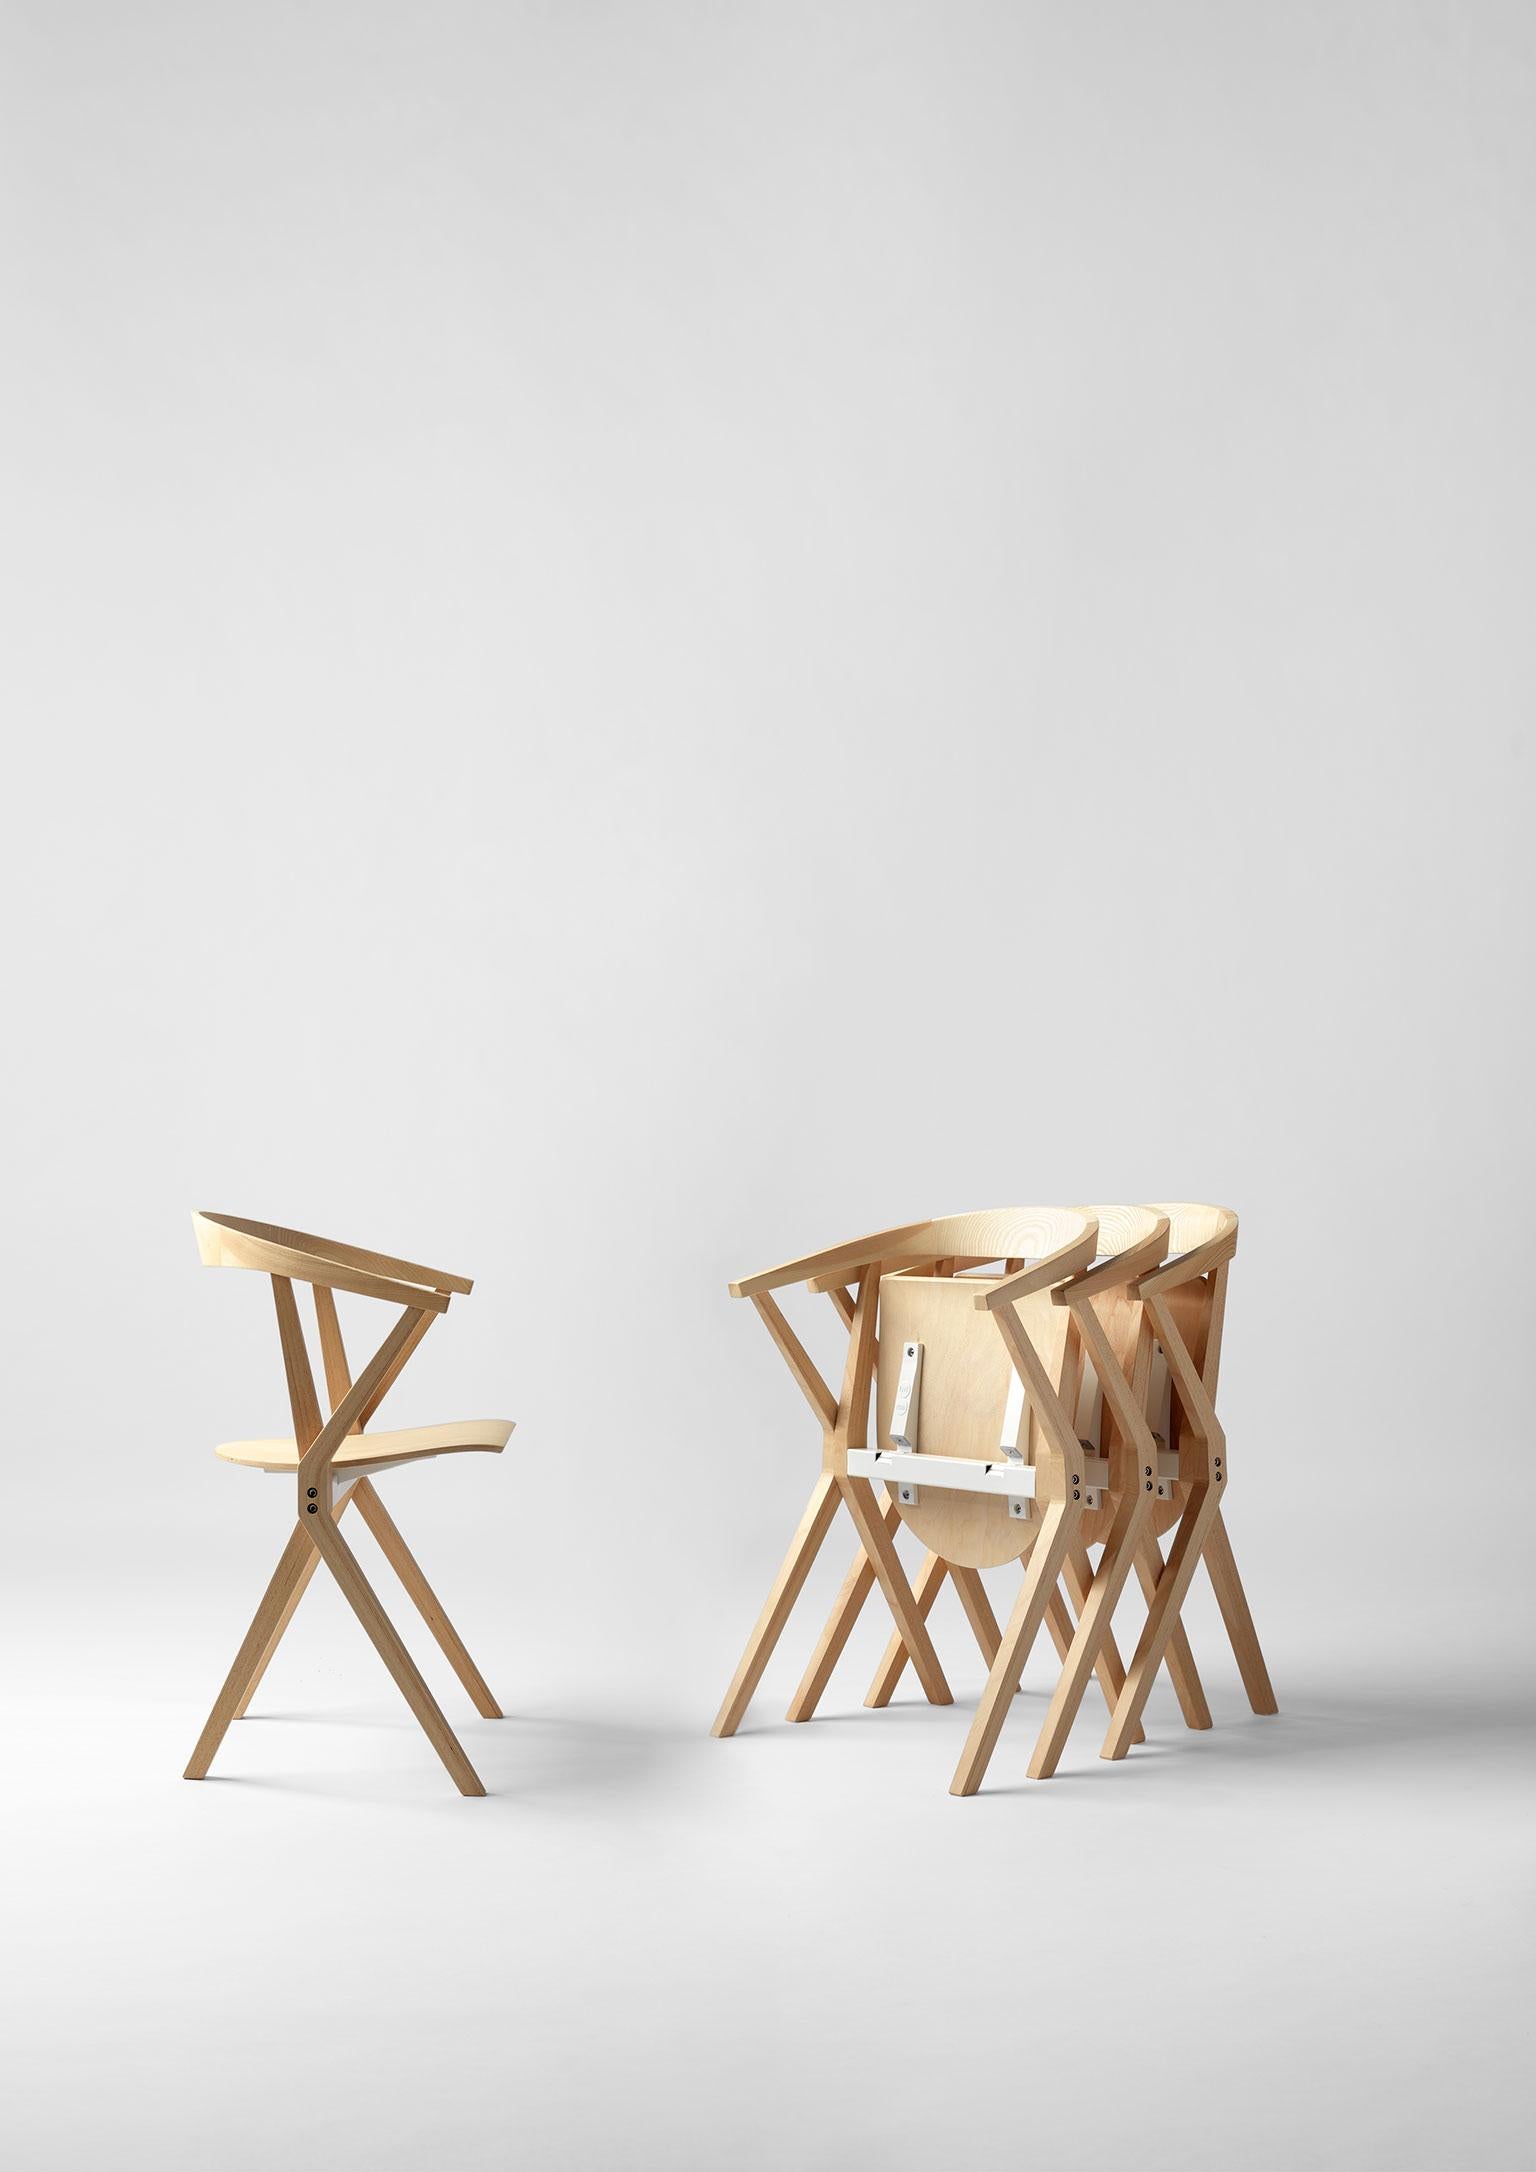 Chaise B conçue par Konstantin Grcic pour BD Barcelona. Konstantin Grcic est un designer industriel allemand connu pour créer des objets fabriqués en série, tels que des meubles et des produits ménagers. Décrit comme ayant une esthétique épurée, ses